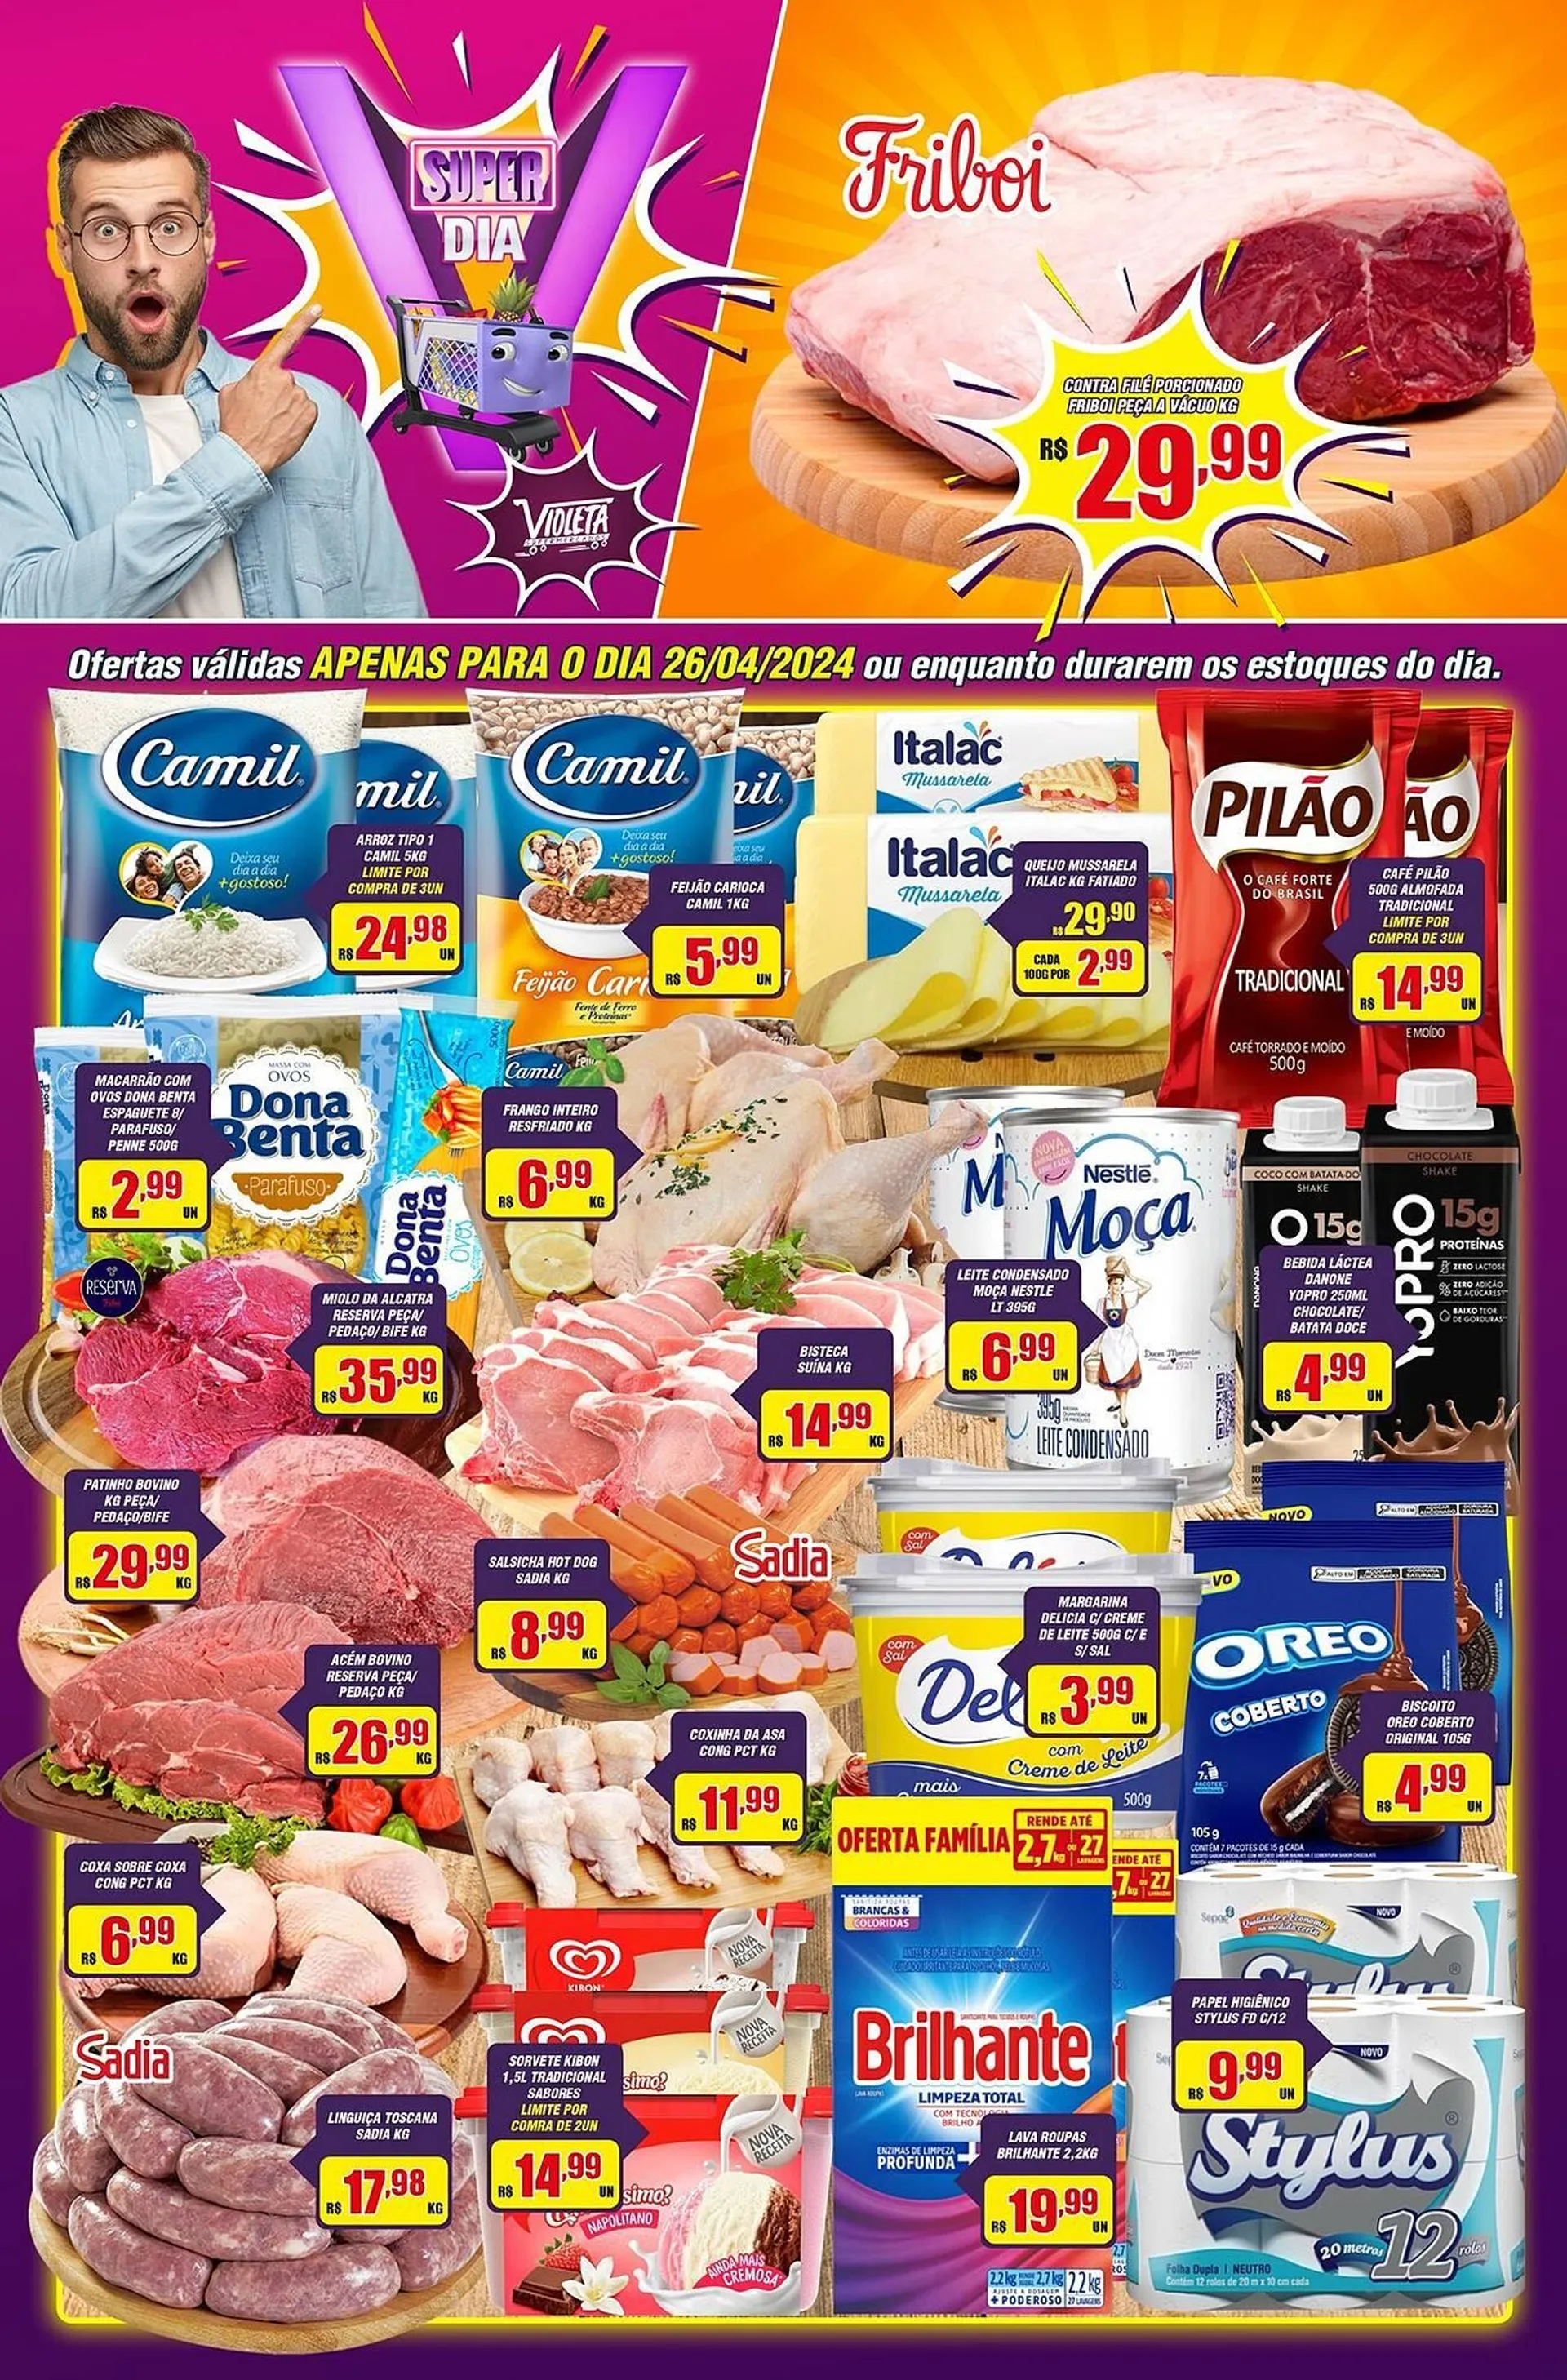 Catálogo Violeta Supermercados - 1